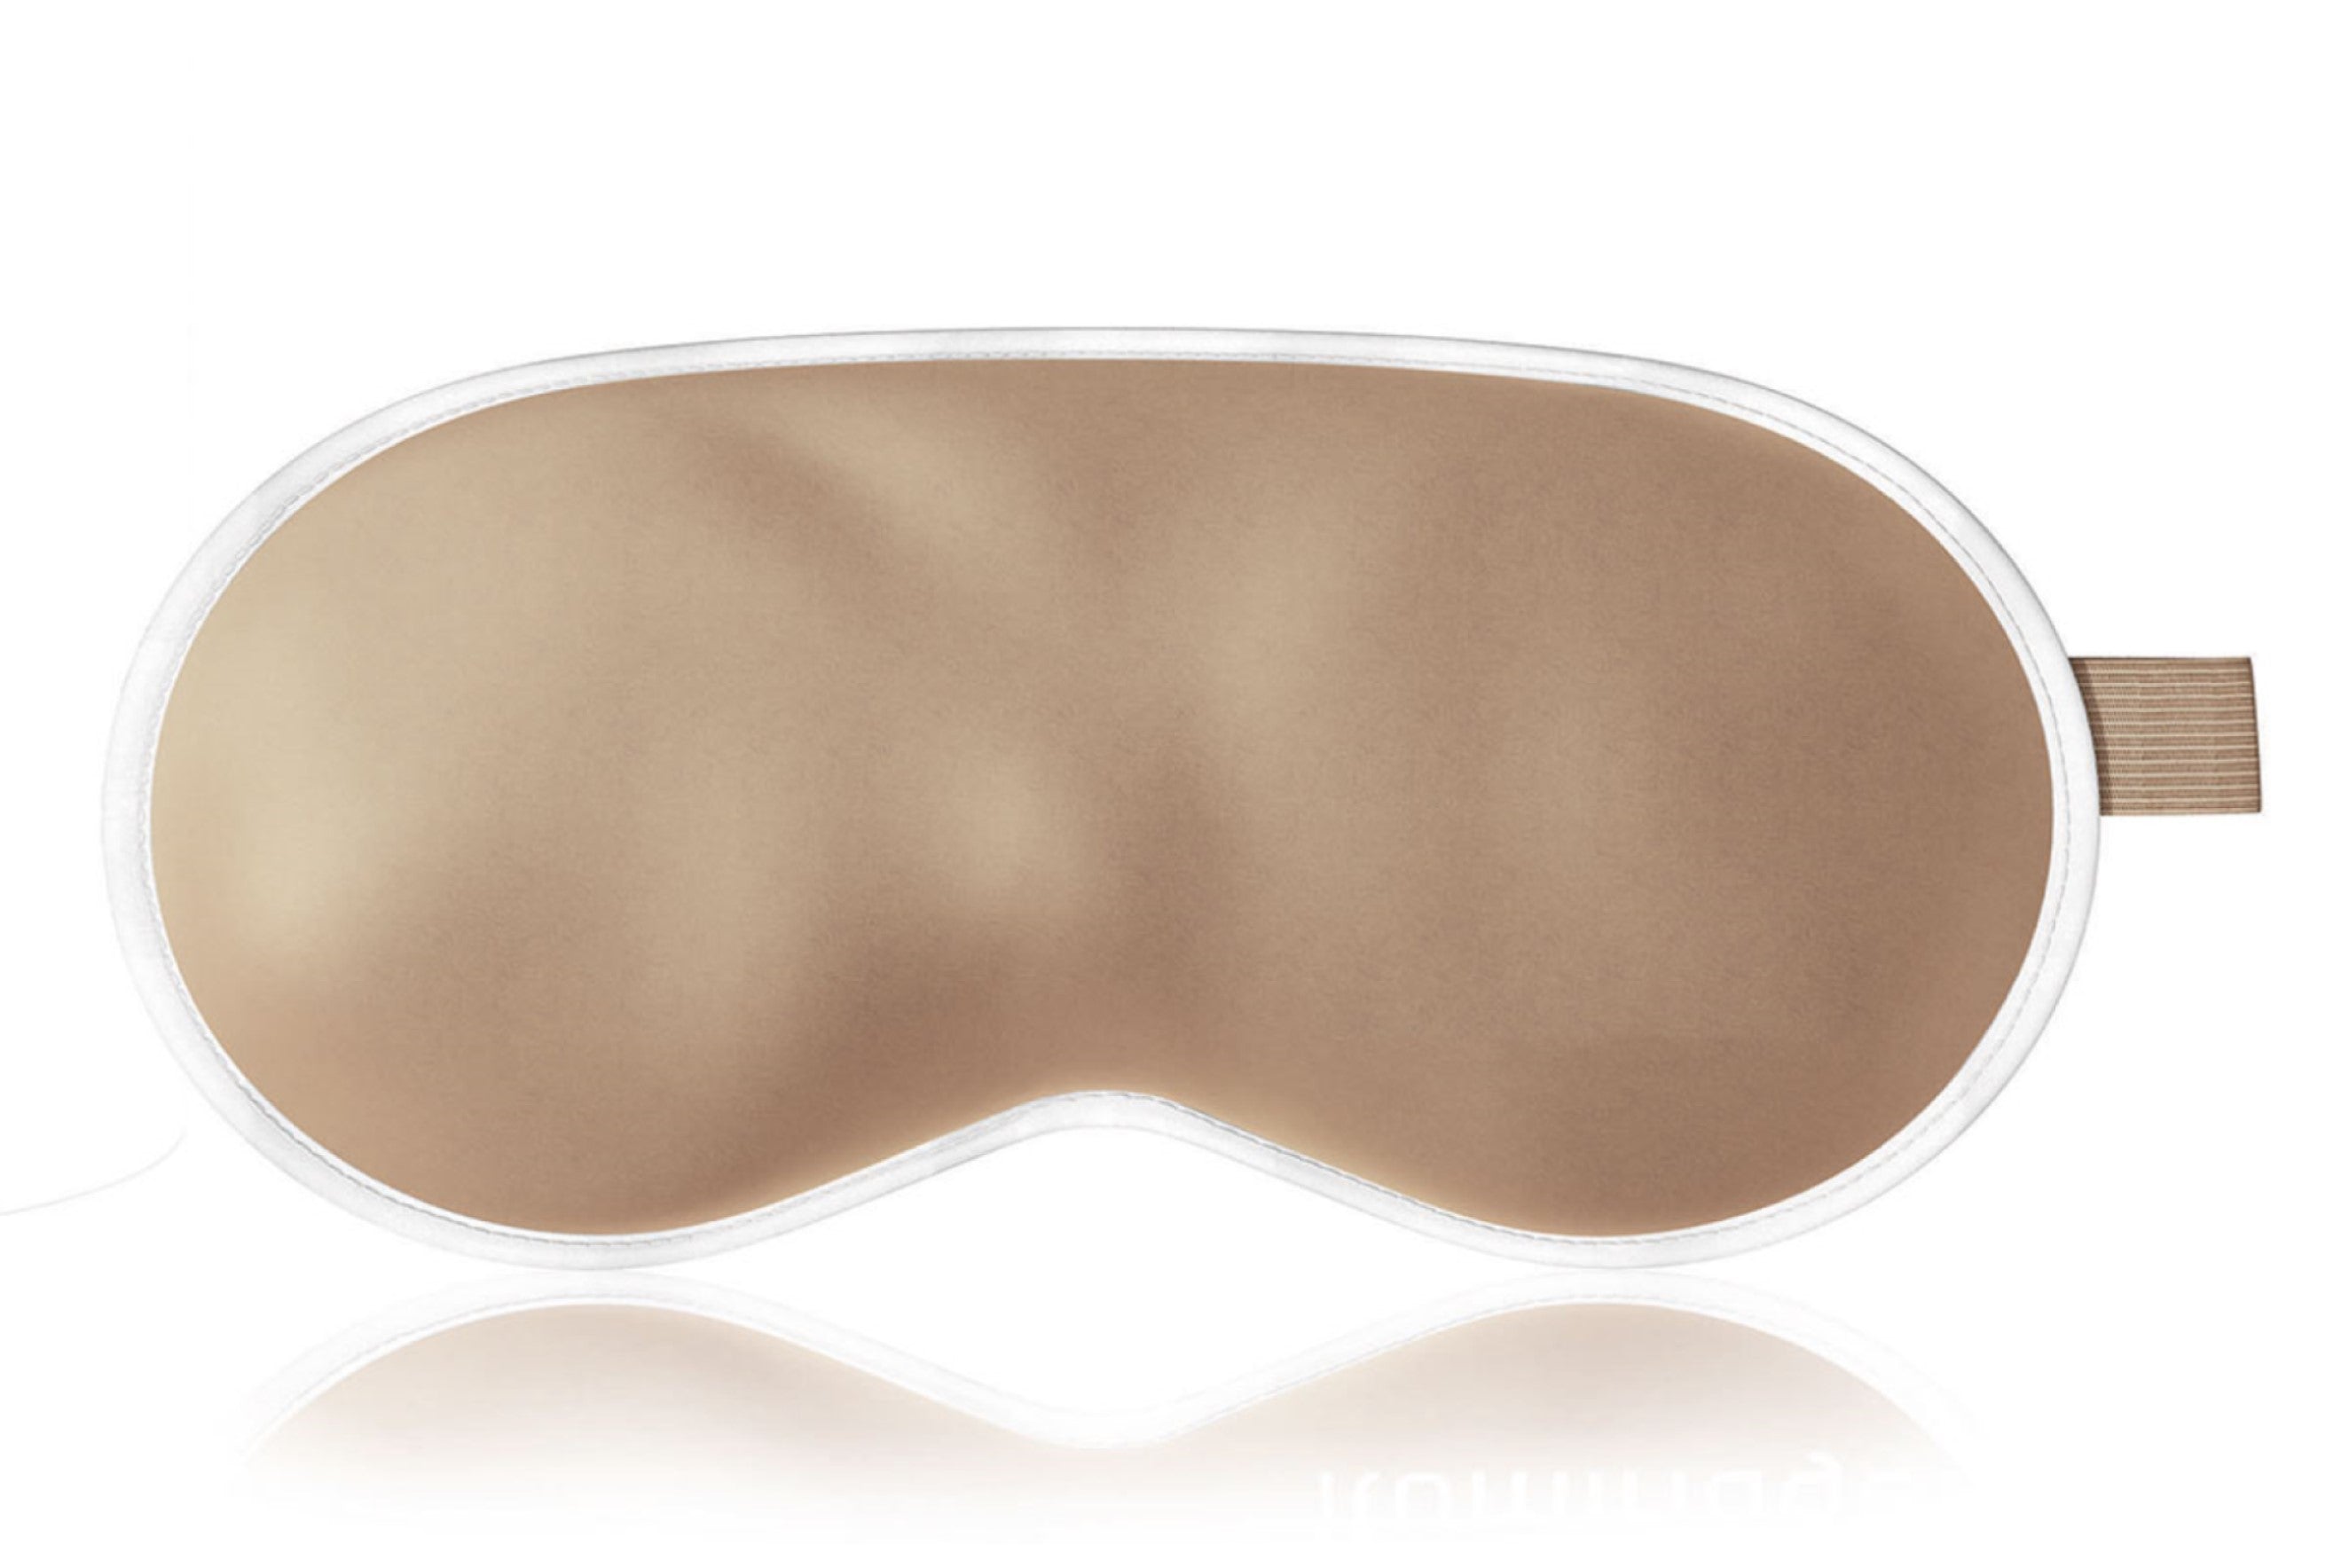 Iluminage Skin Rejuvenating Eye Mask with Anti-Aging Copper Technology